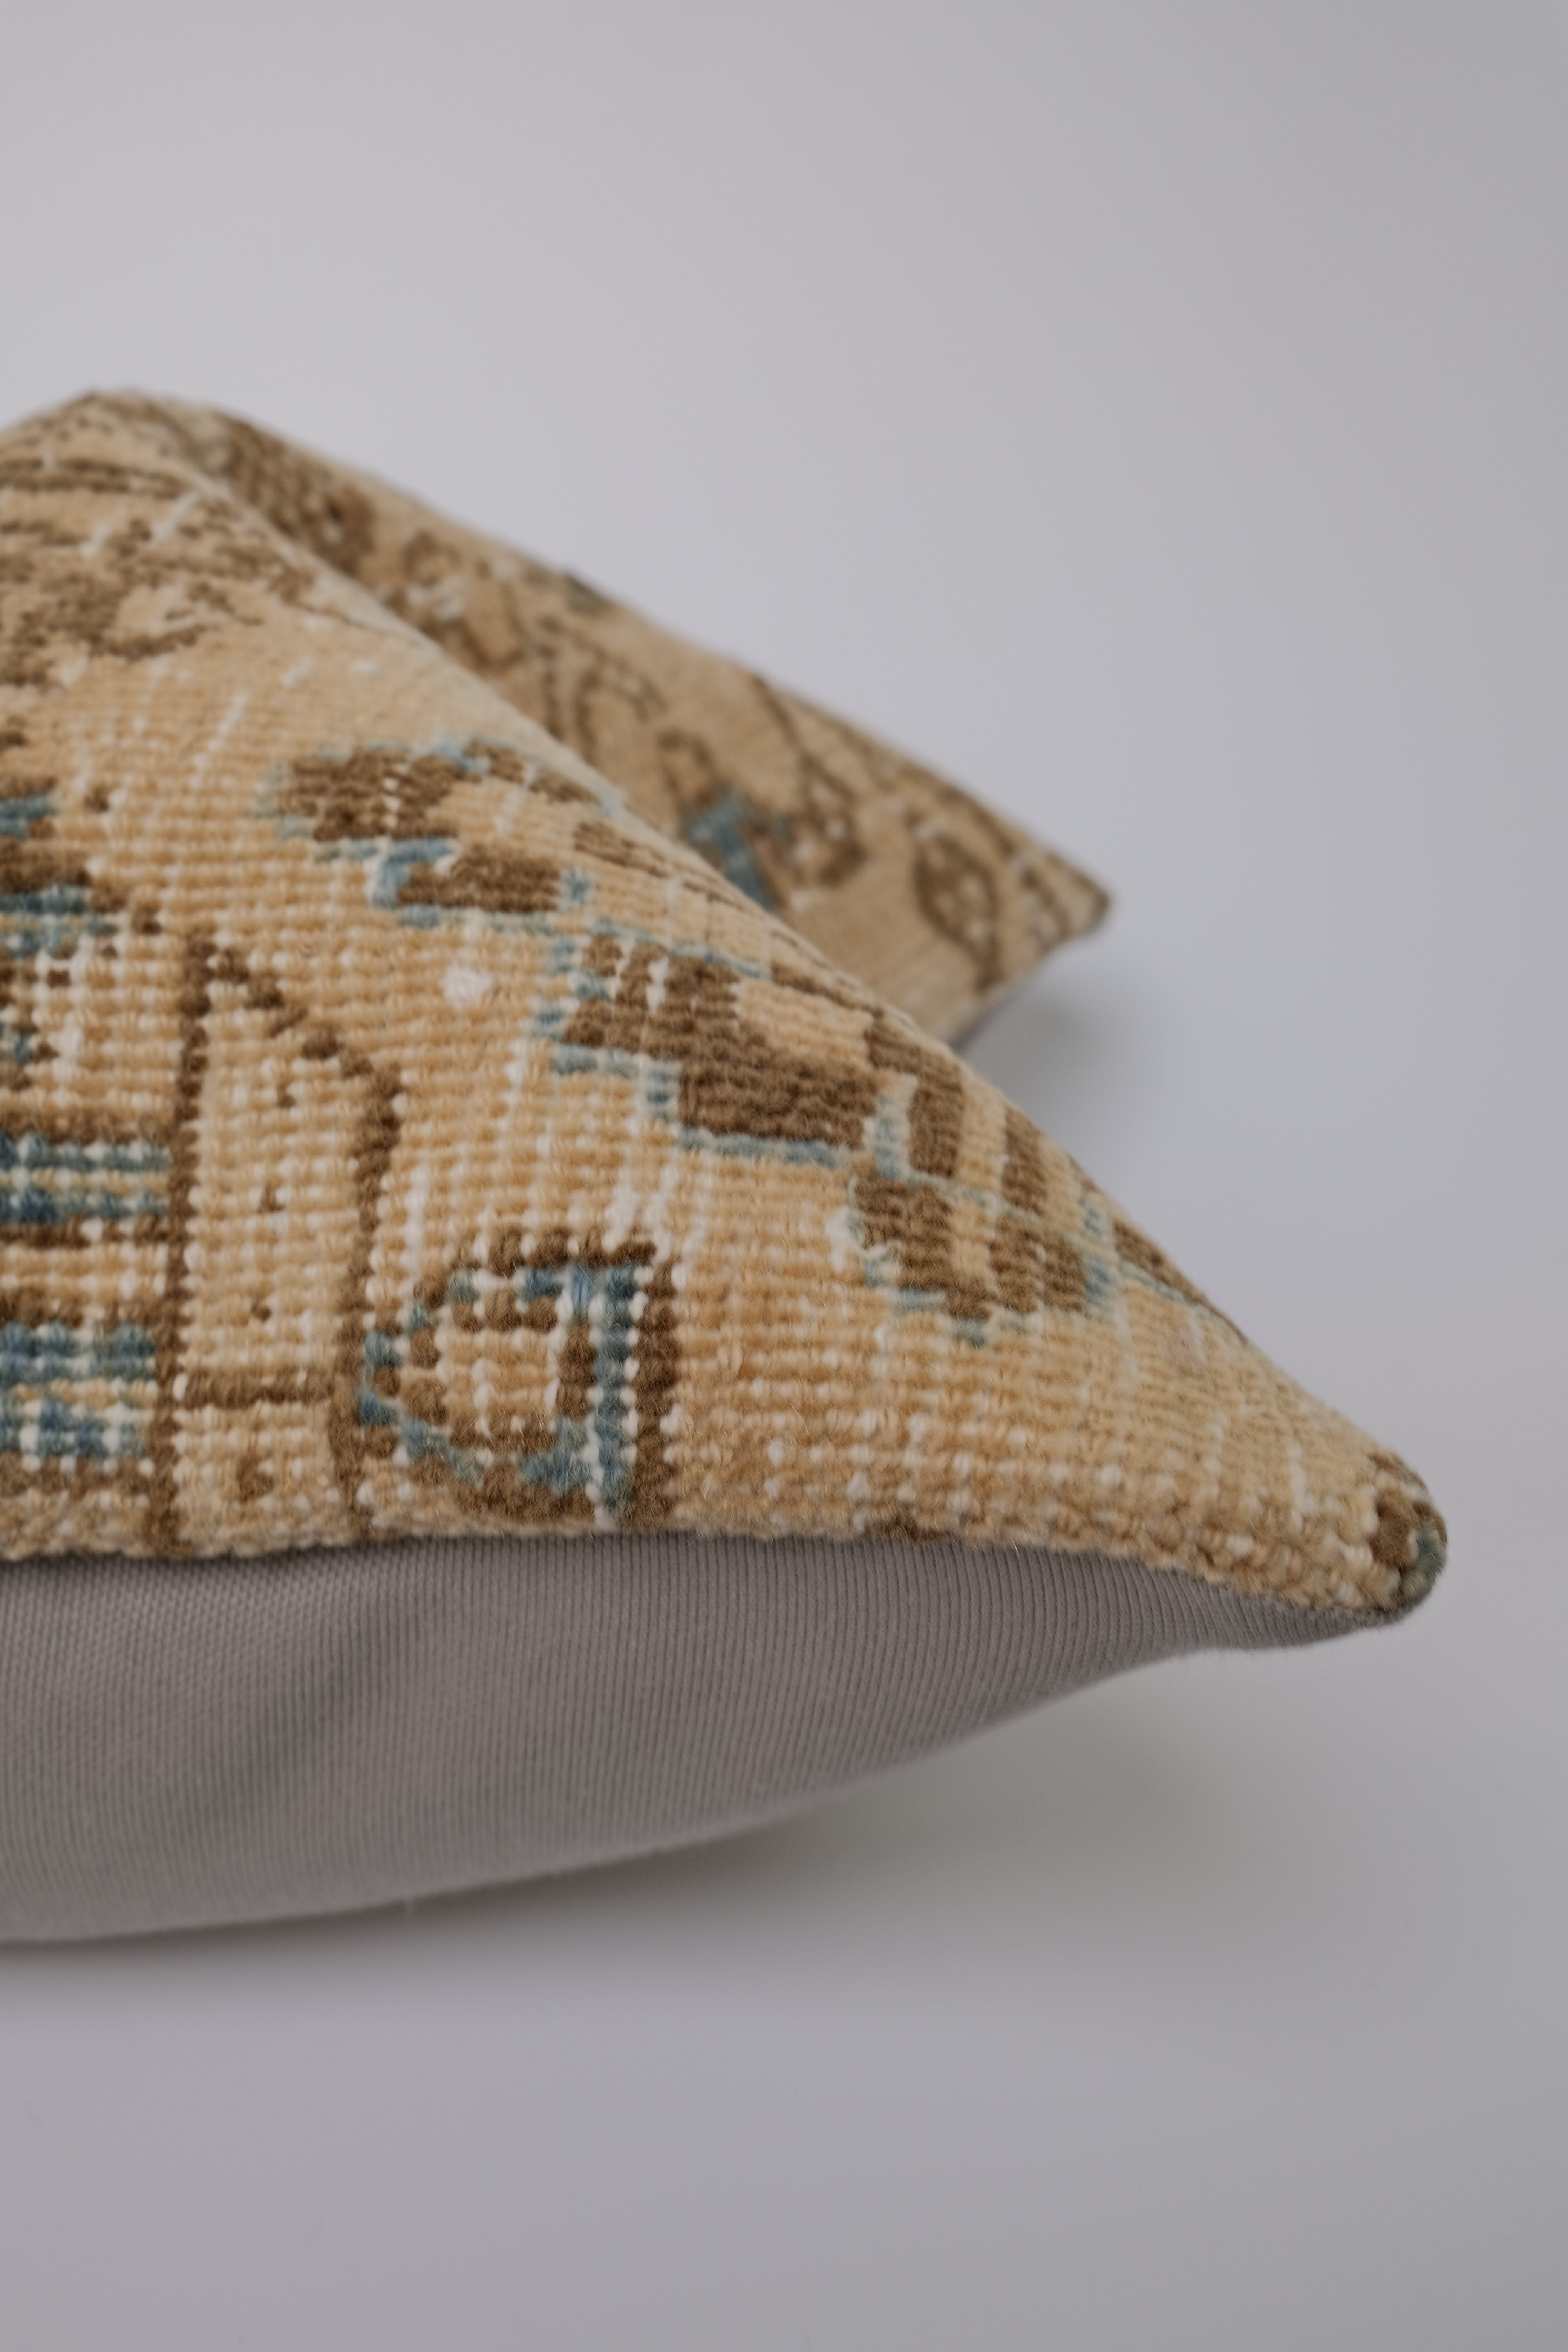 Hasan Turkish Vintage Rug Pillow